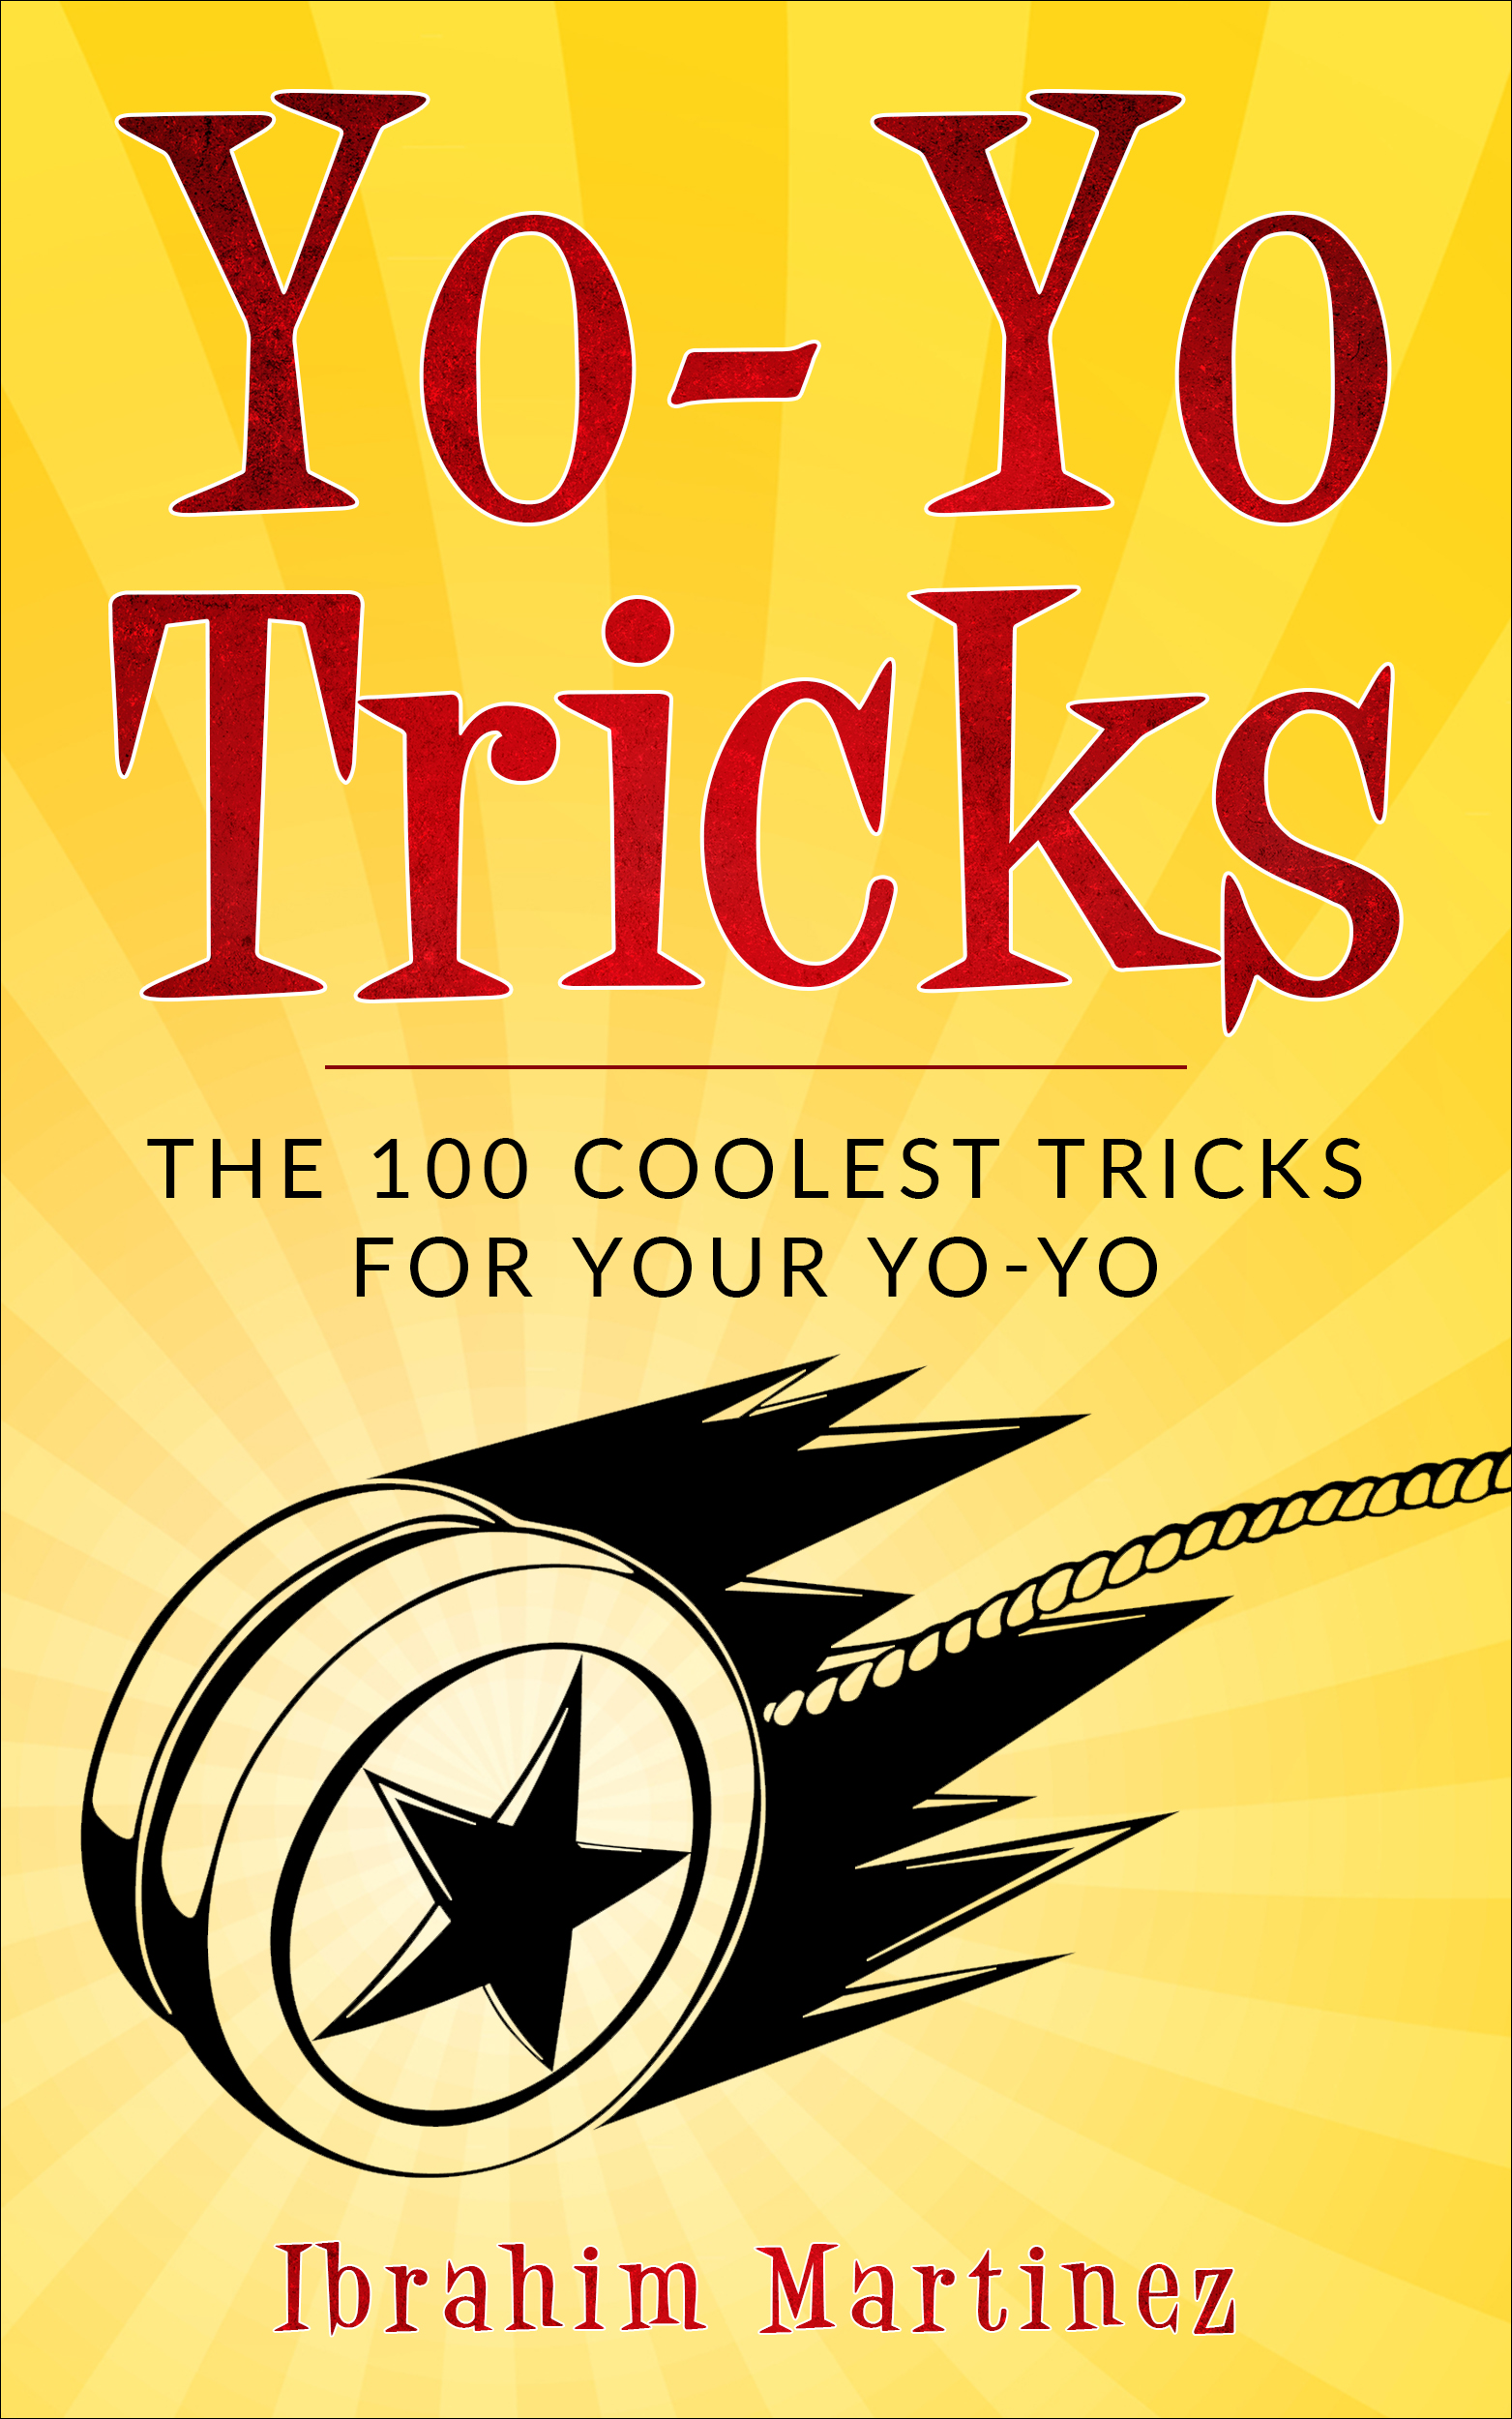 FREE: Yo-Yo Tricks : The 100 Coolest Tricks For Your Yo-Yo by Ibrahim Martinez